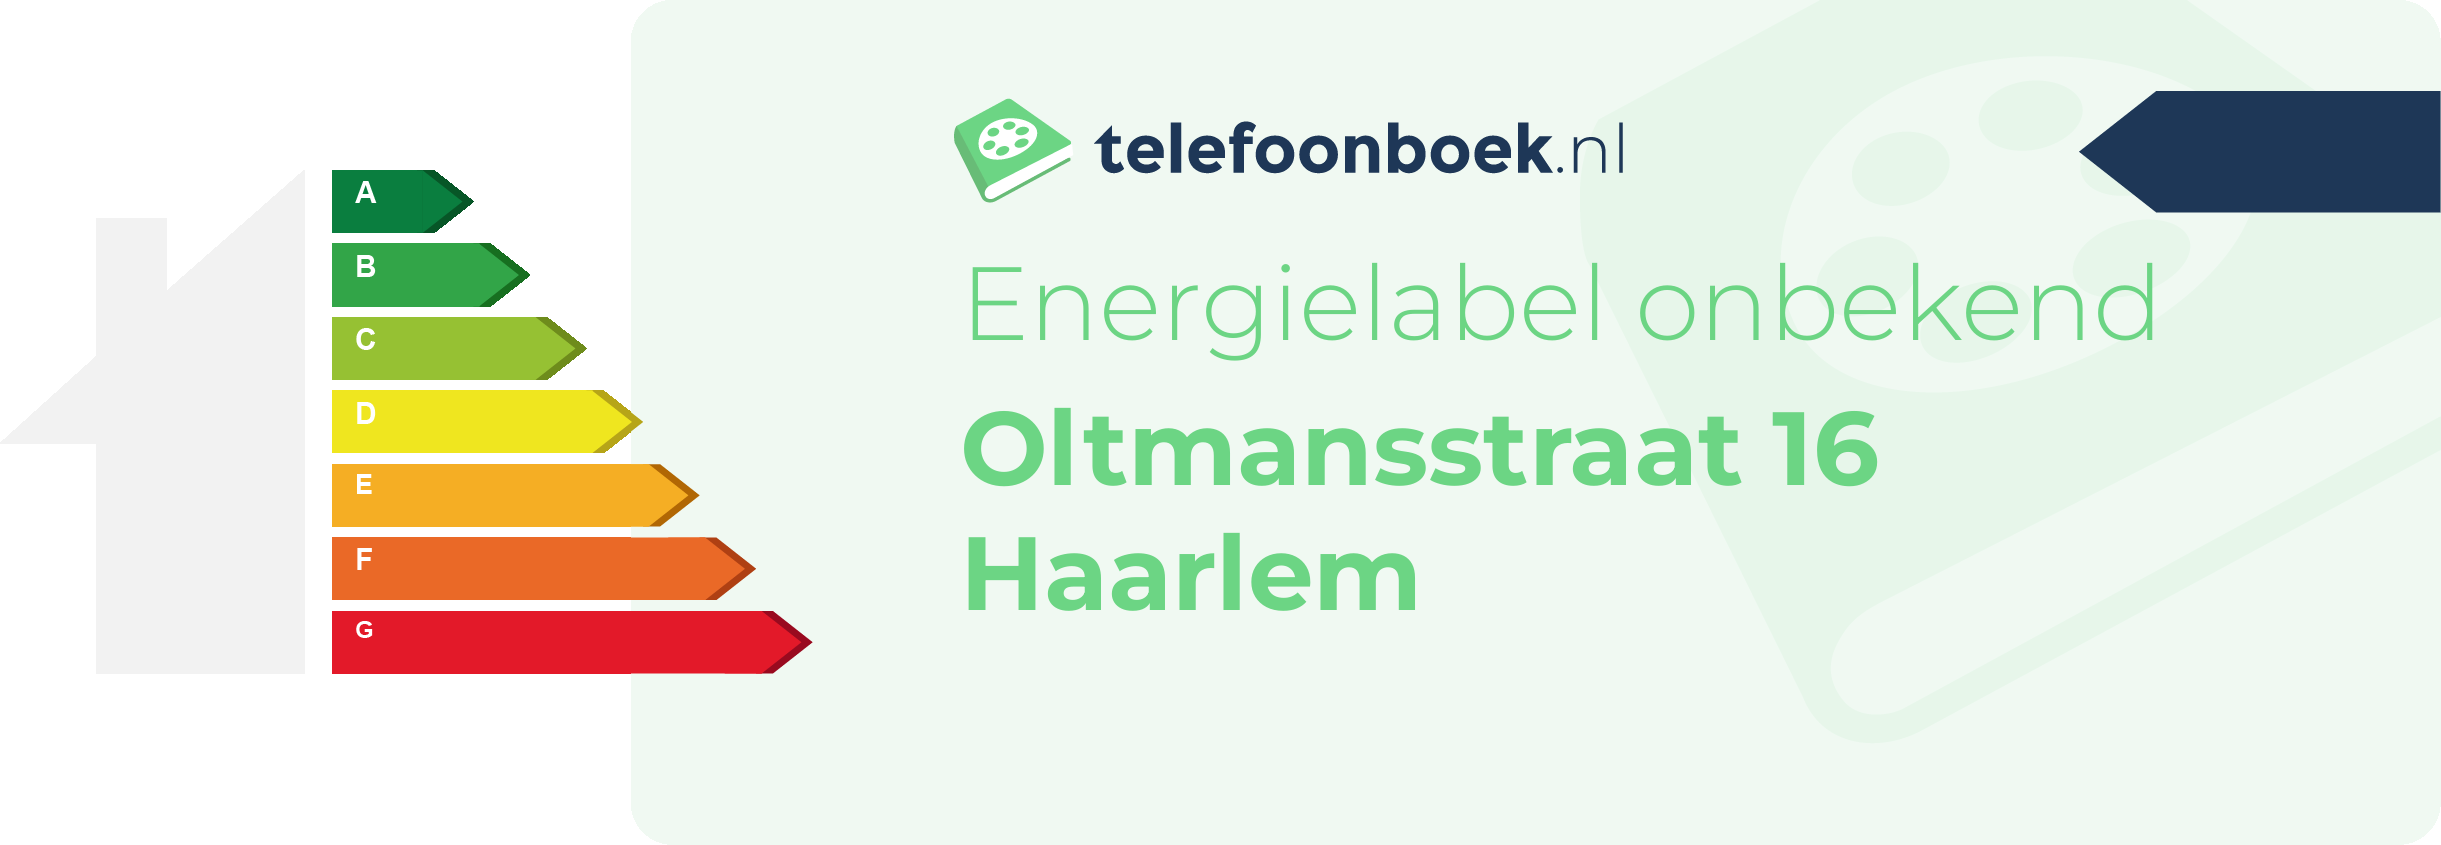 Energielabel Oltmansstraat 16 Haarlem